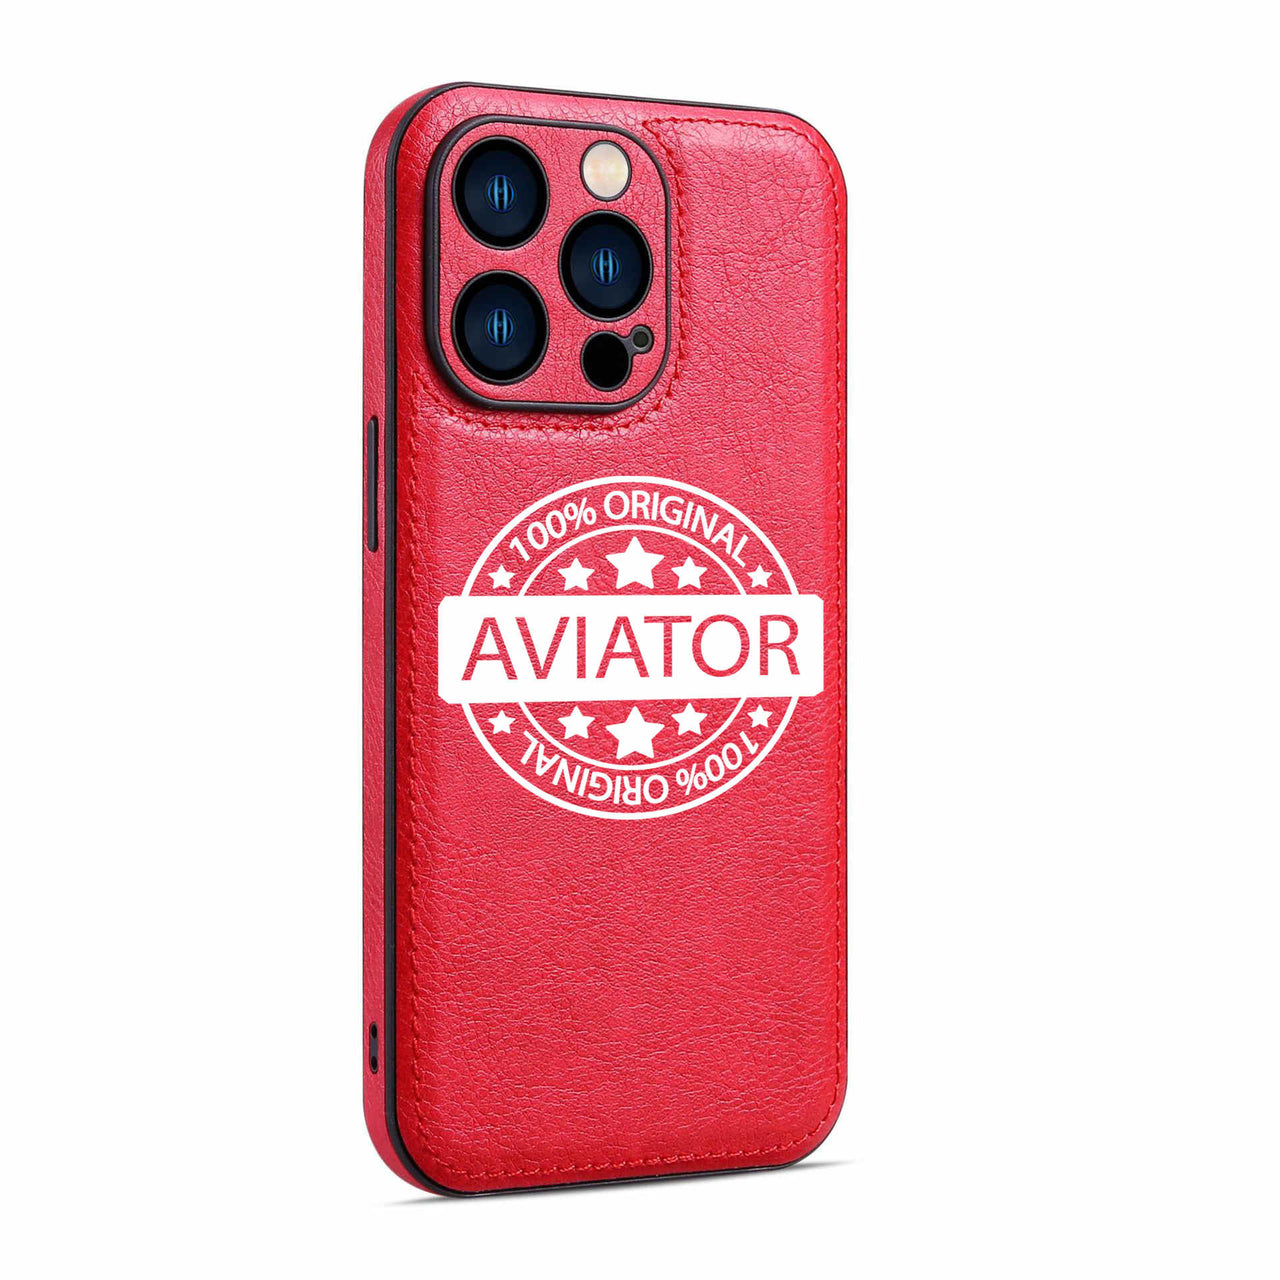 100 Original Aviator Designed Leather iPhone Cases